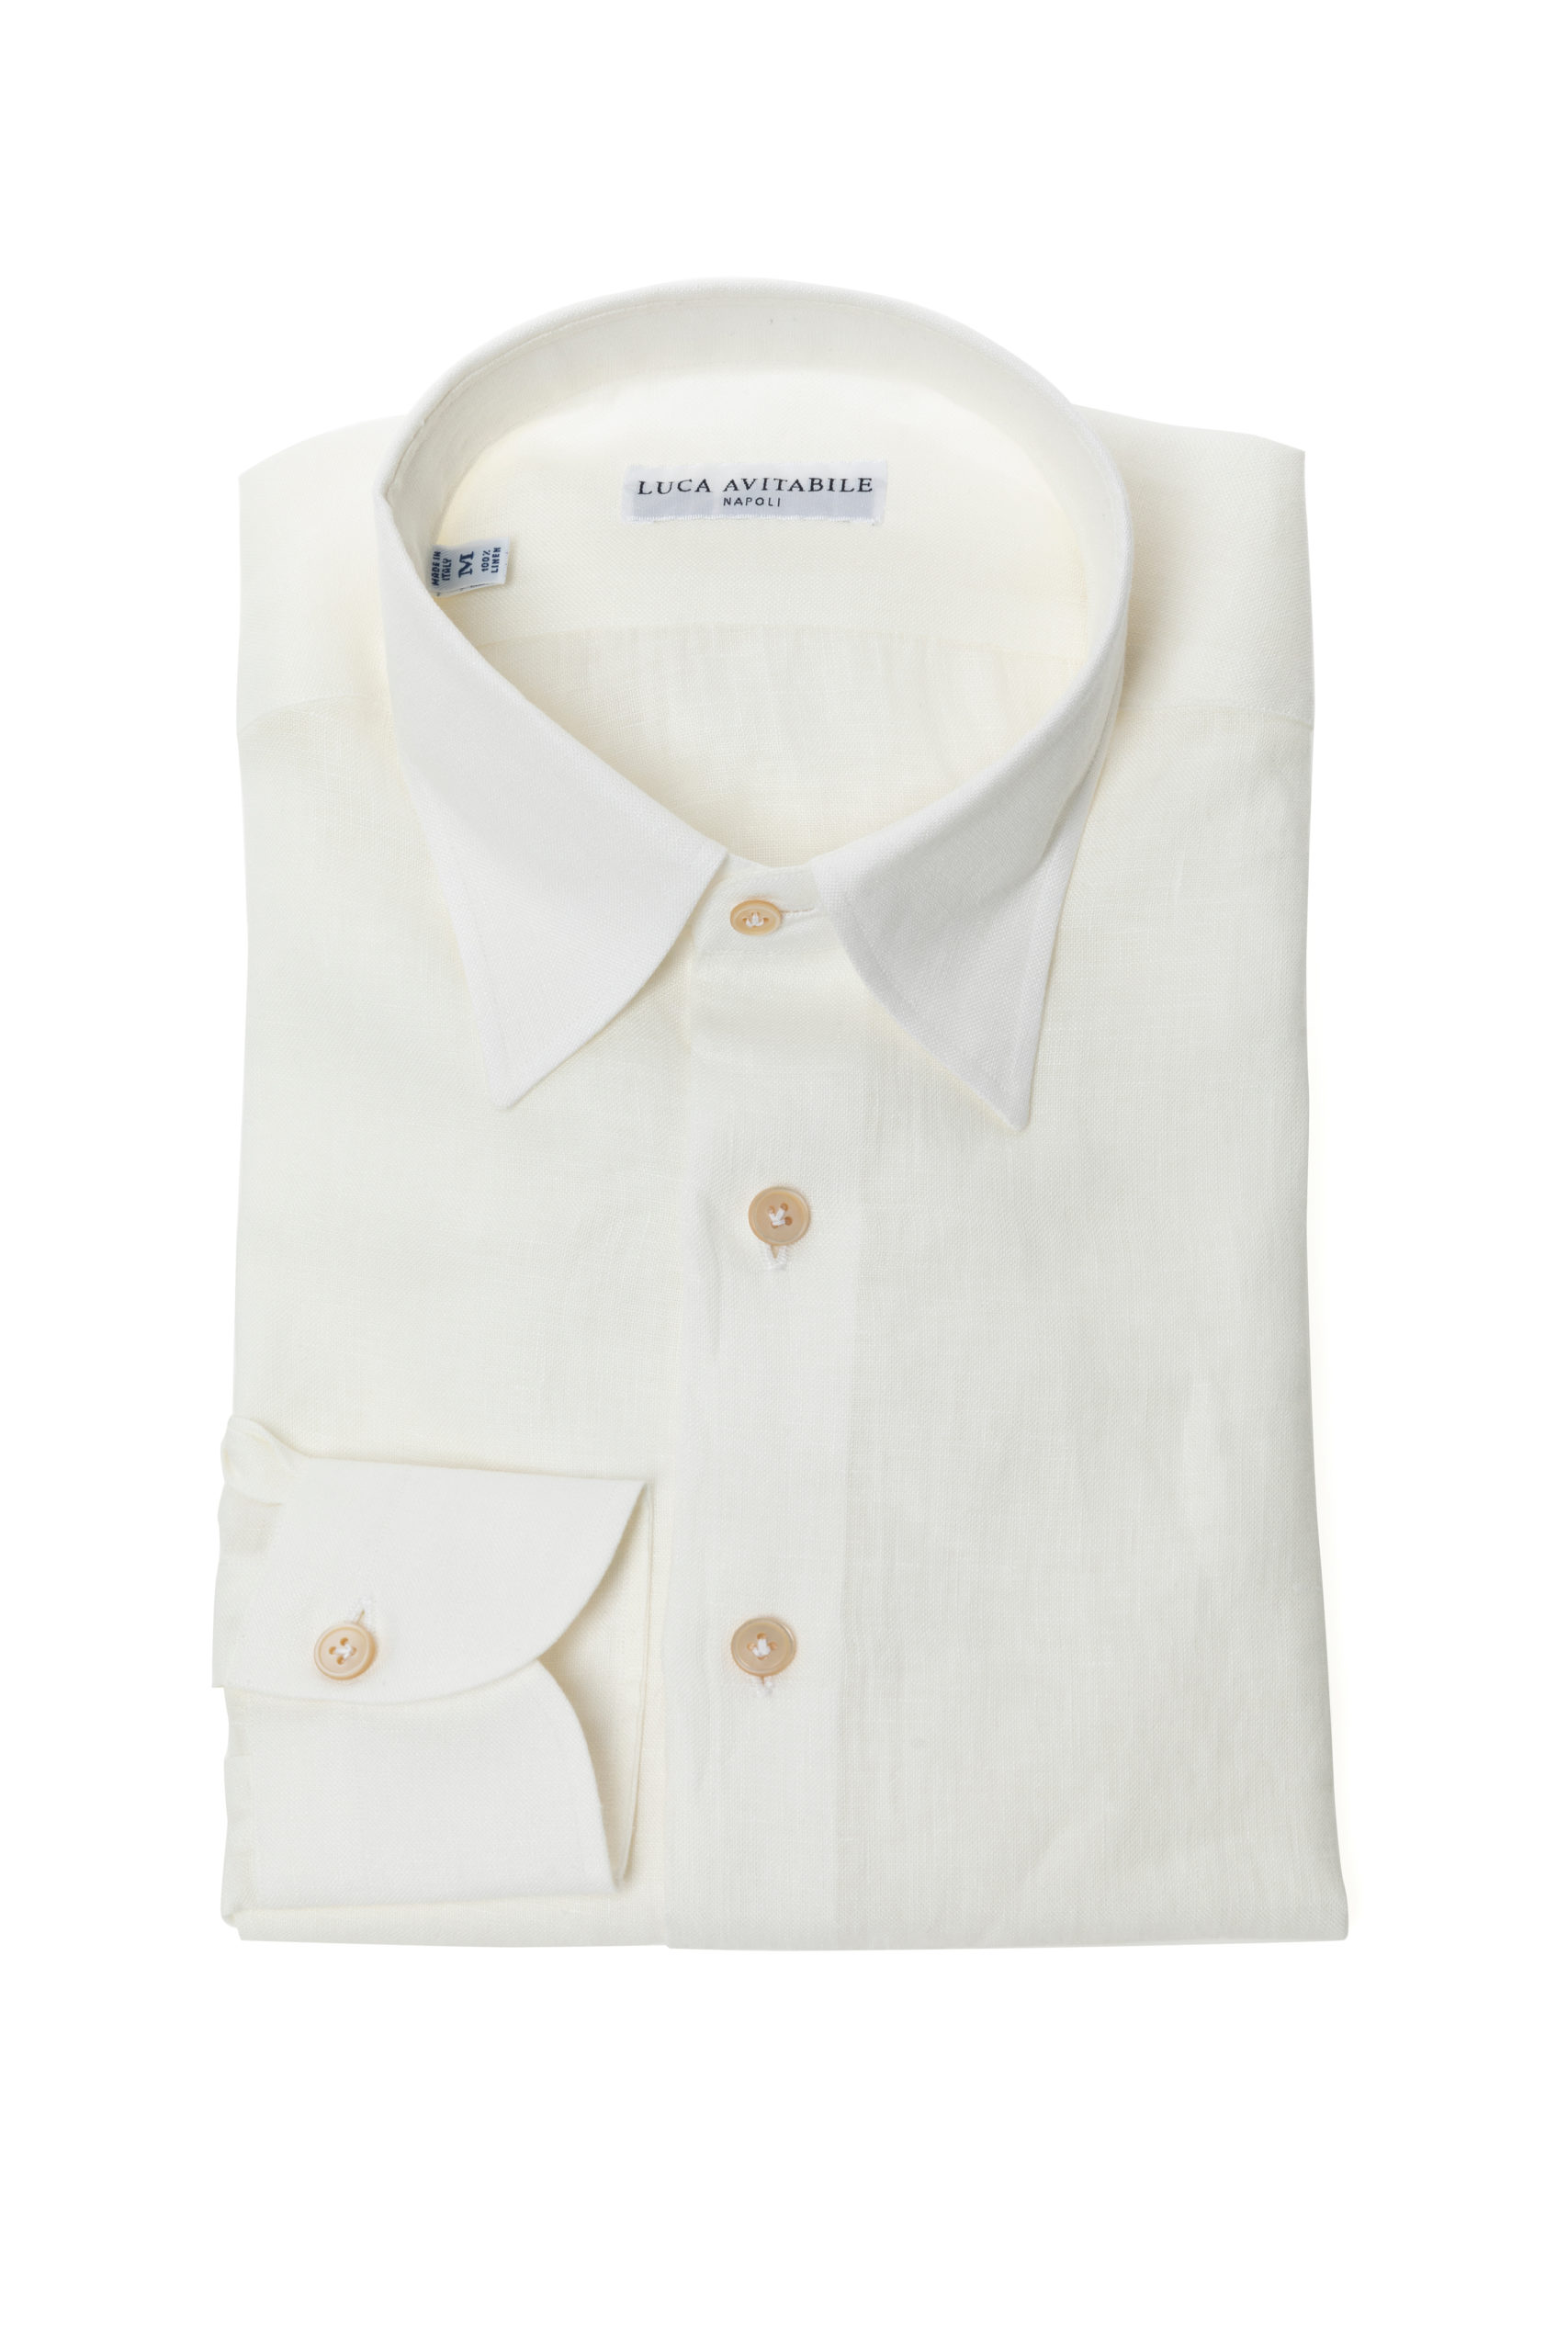 Primavera - Ivory Irish Linen Shirt - Luca Avitabile - Handmade Shirt